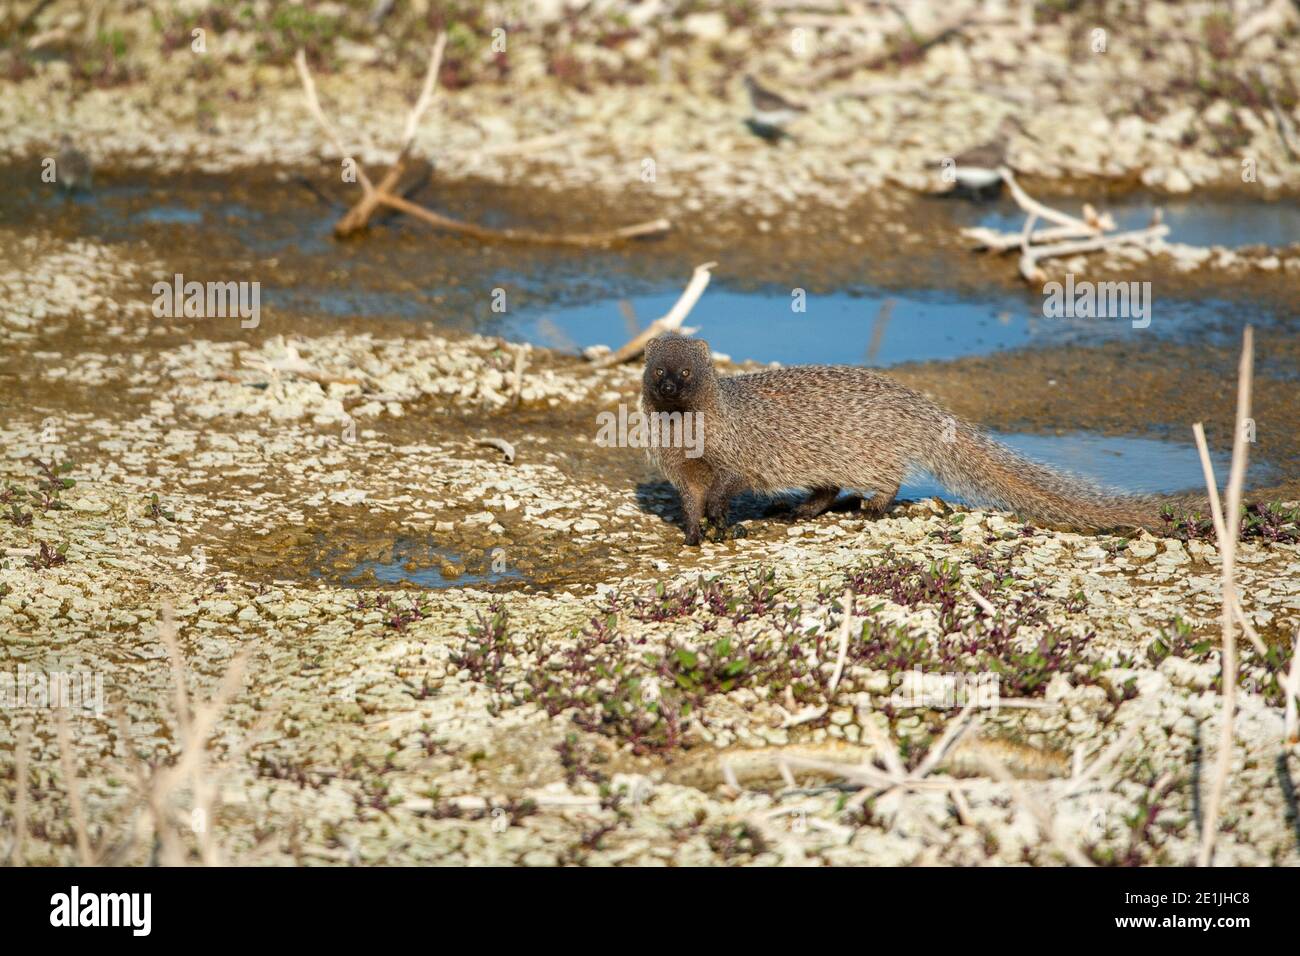 Egyptian mongoose (Herpestes ichneumon) Stock Photo